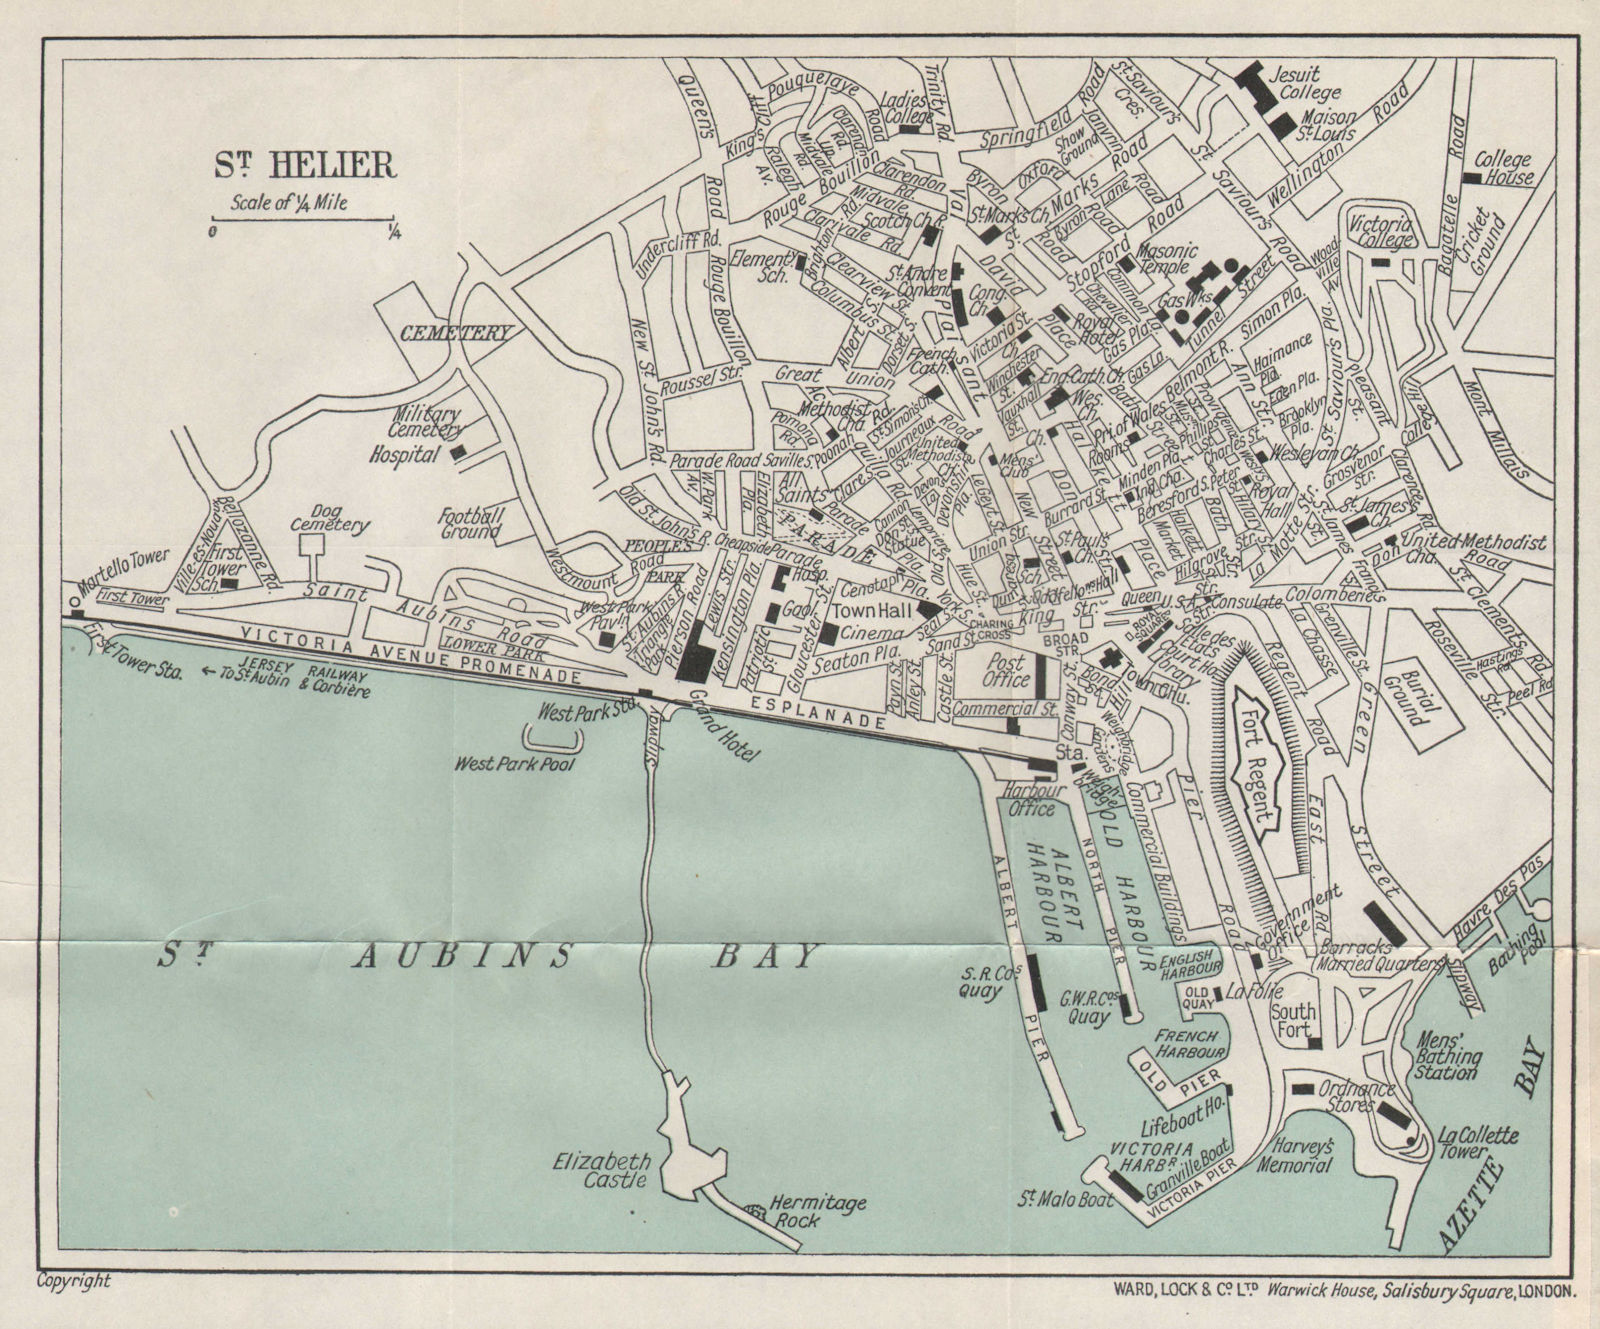 Associate Product ST. HELIER vintage town city plan. Jersey Channel Islands. WARD LOCK 1934 map